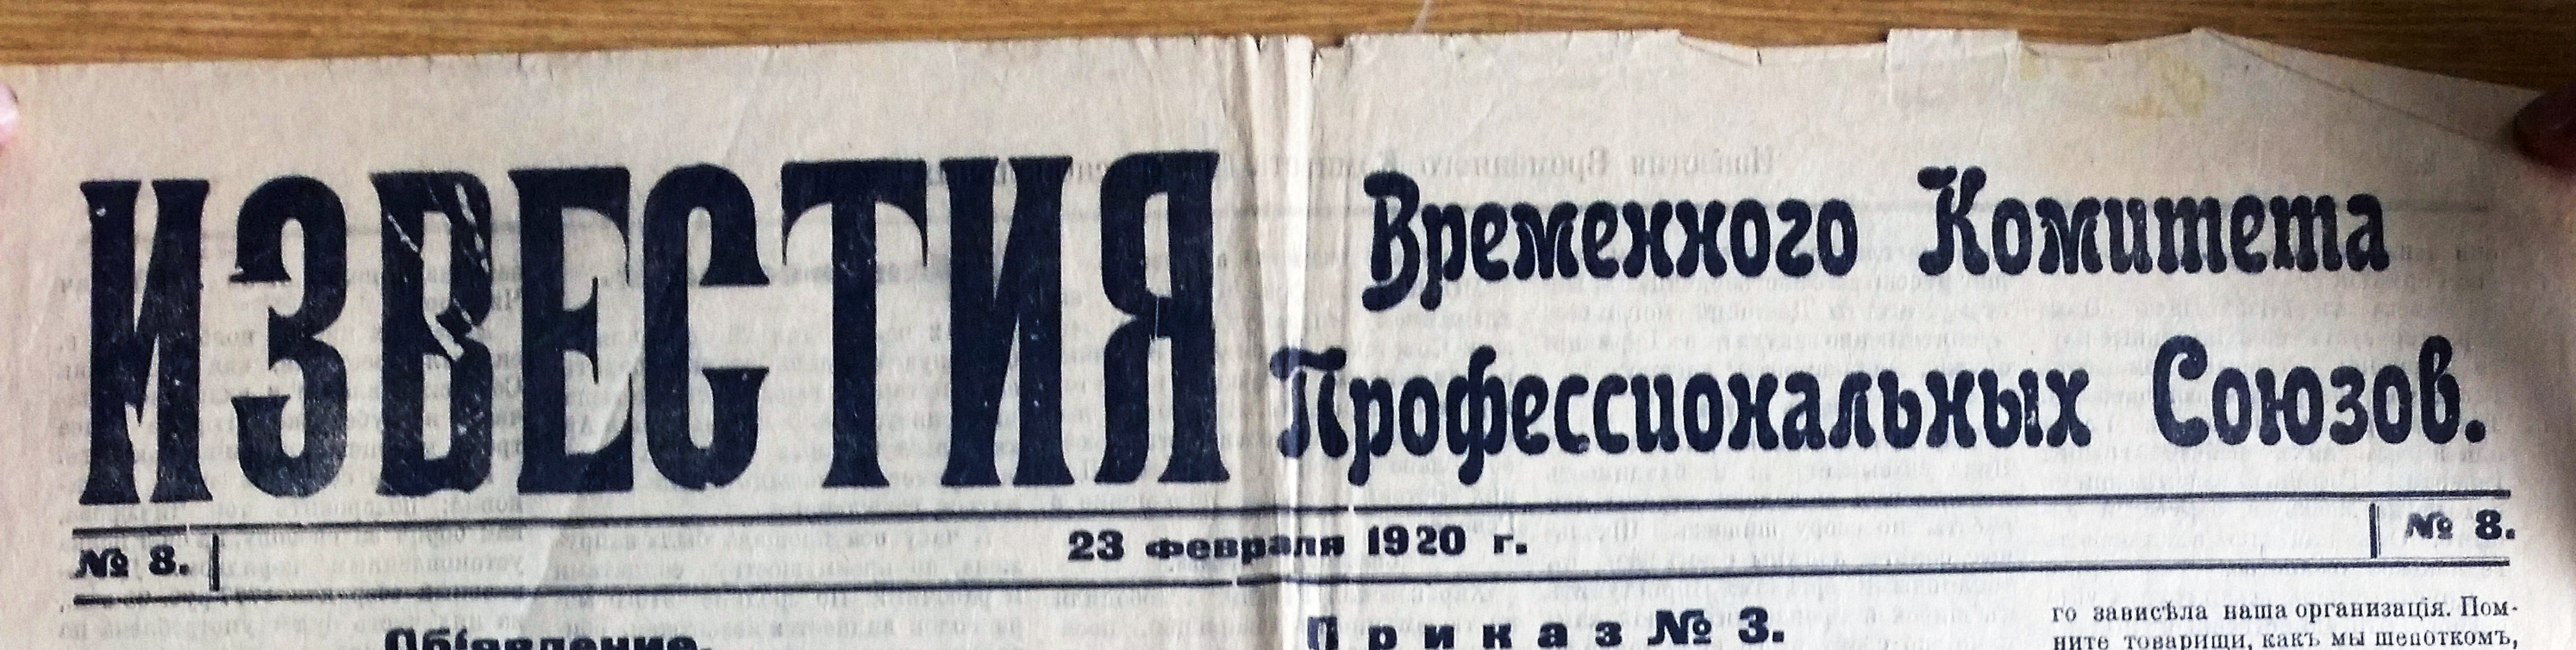 Газета вр. и. к. профсоюзов. Всего вышло 11 номеров, первый – «Красная газета» – 20 февраля, последний –
26 февраля 1920 г.